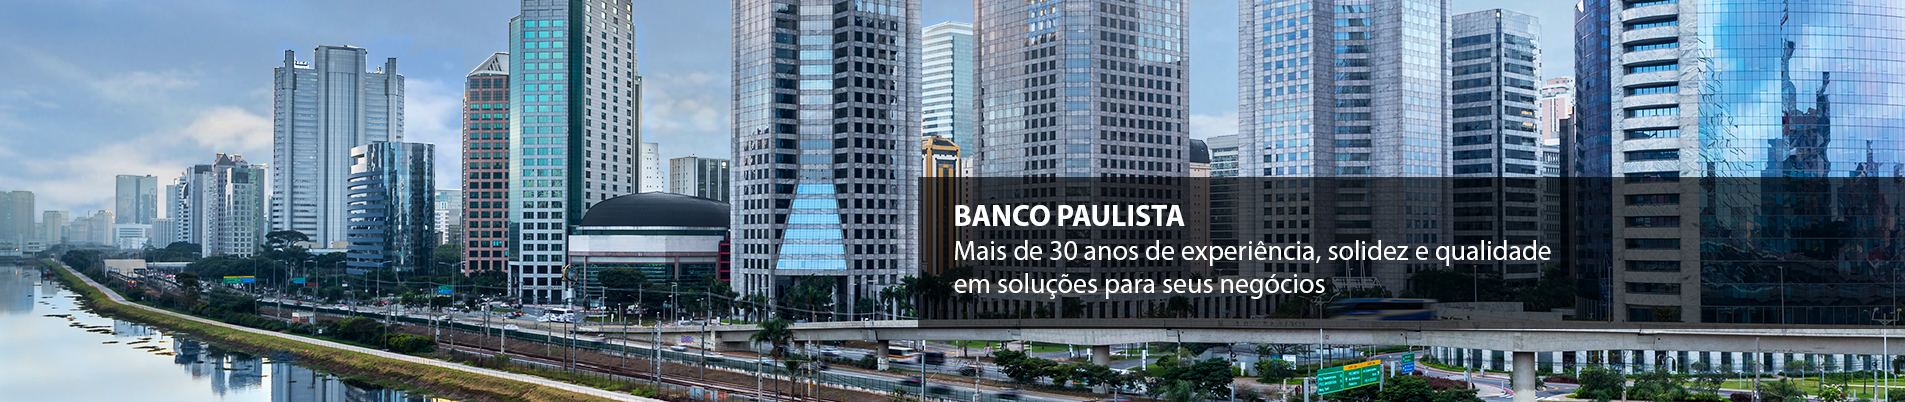 Veja o rating do Banco Paulista e se ele é confiável e seguro.